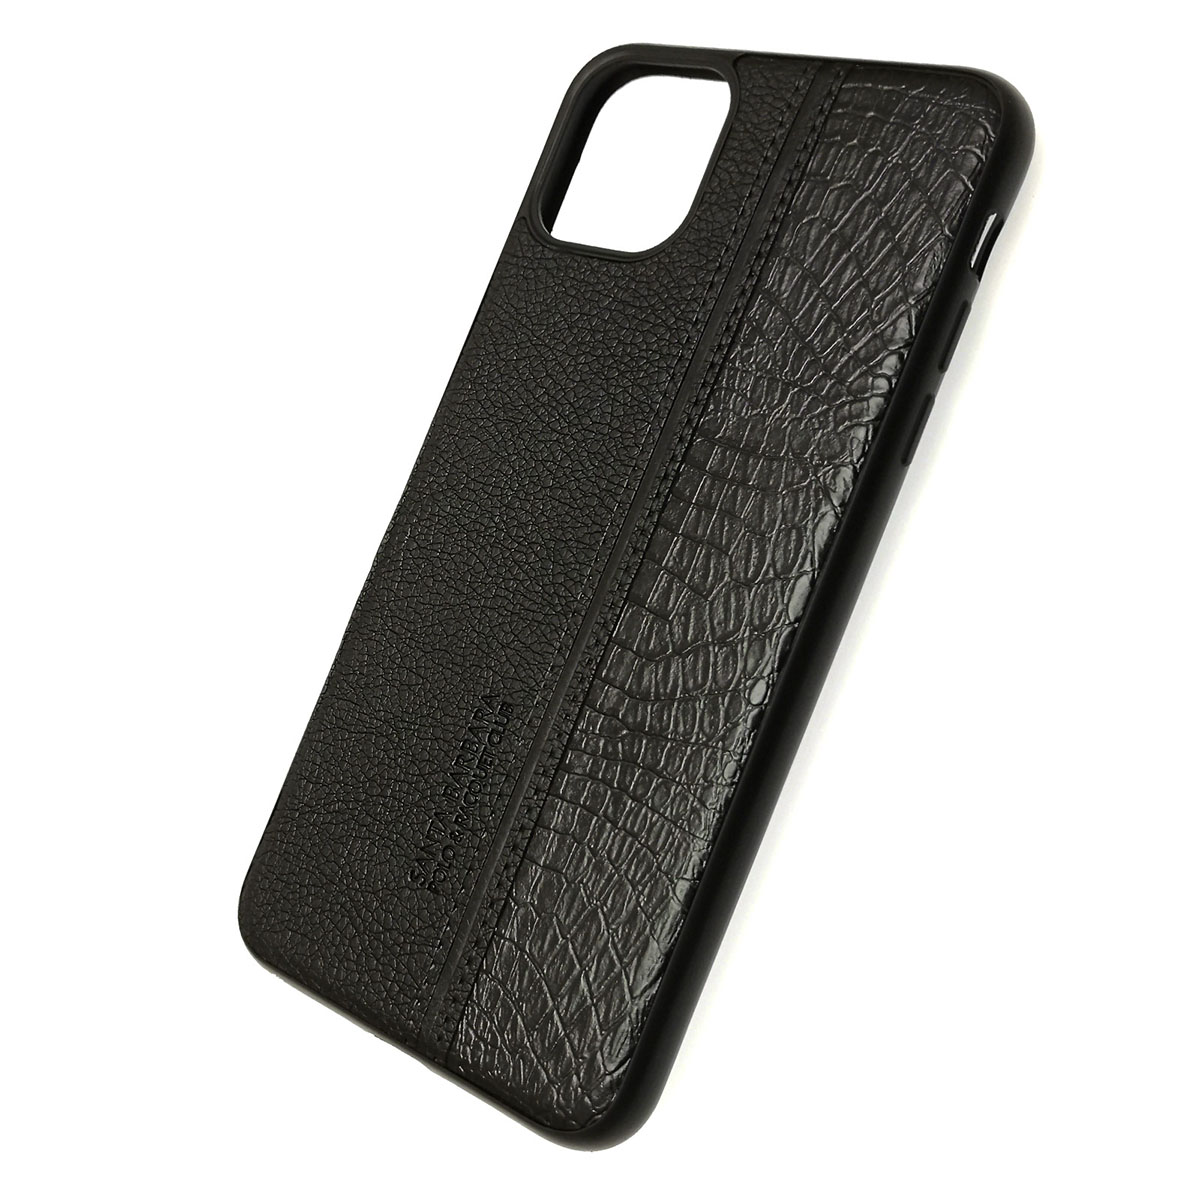 Чехол накладка для APPLE iPhone 11 Pro MAX 2019, силикон под кожу, цвет черный.